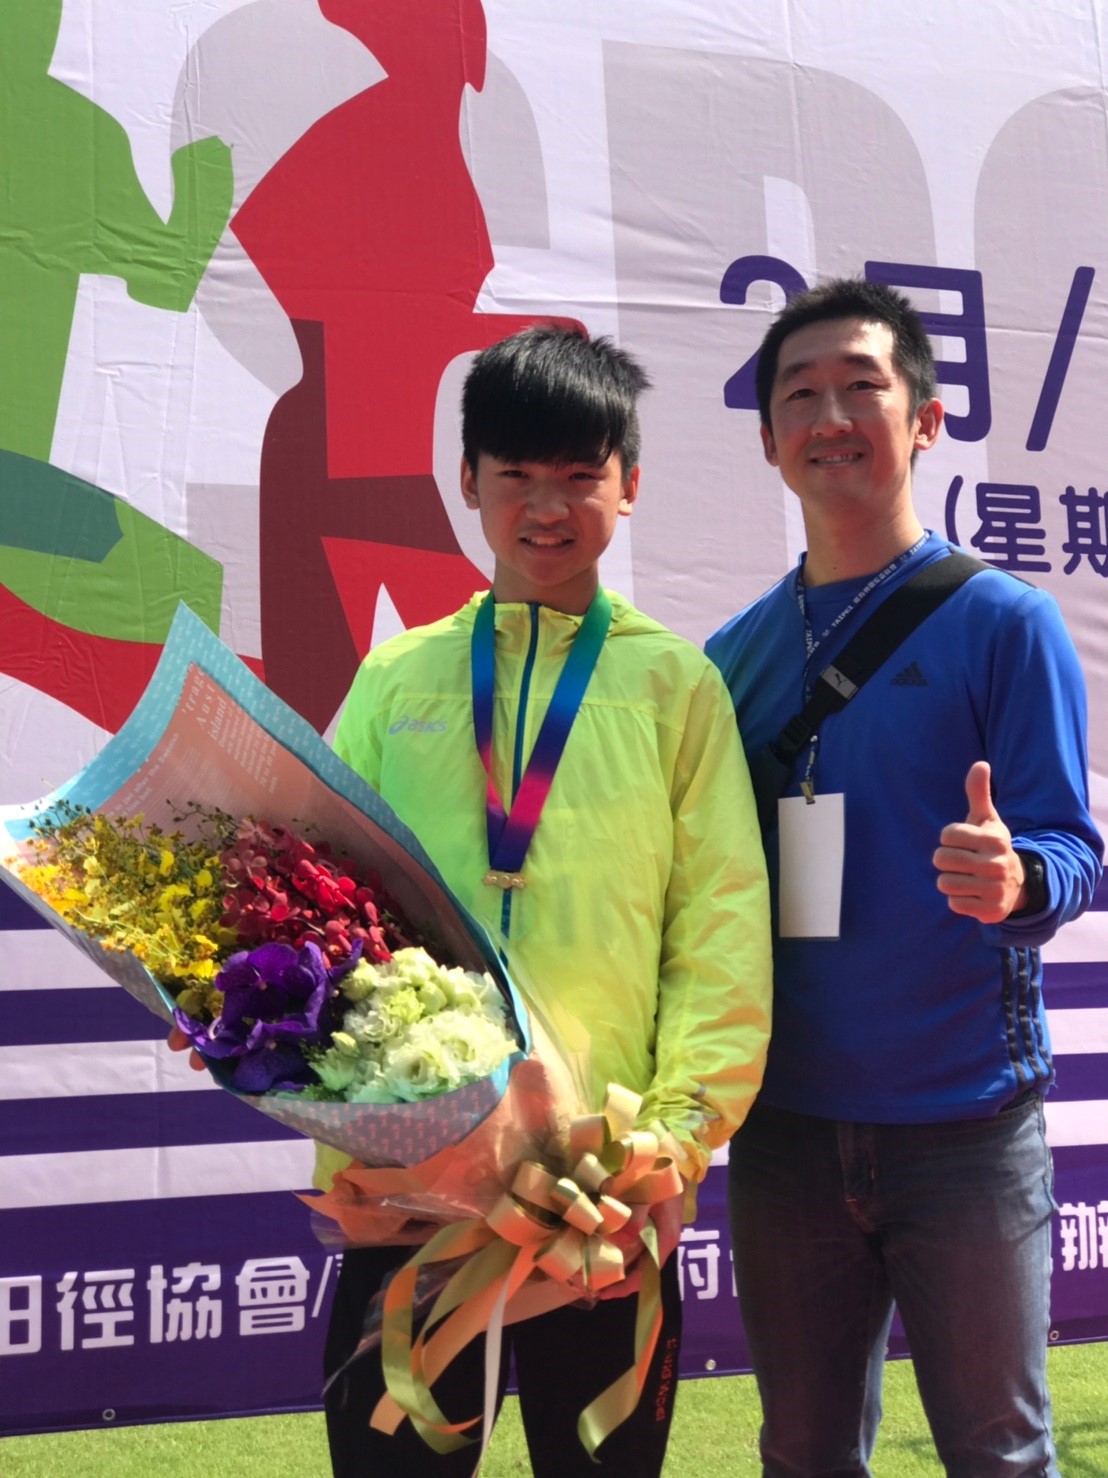 許峯毓同學以5米15成績，奪下臺北市春季全國田徑公開賽跳遠項目金牌!